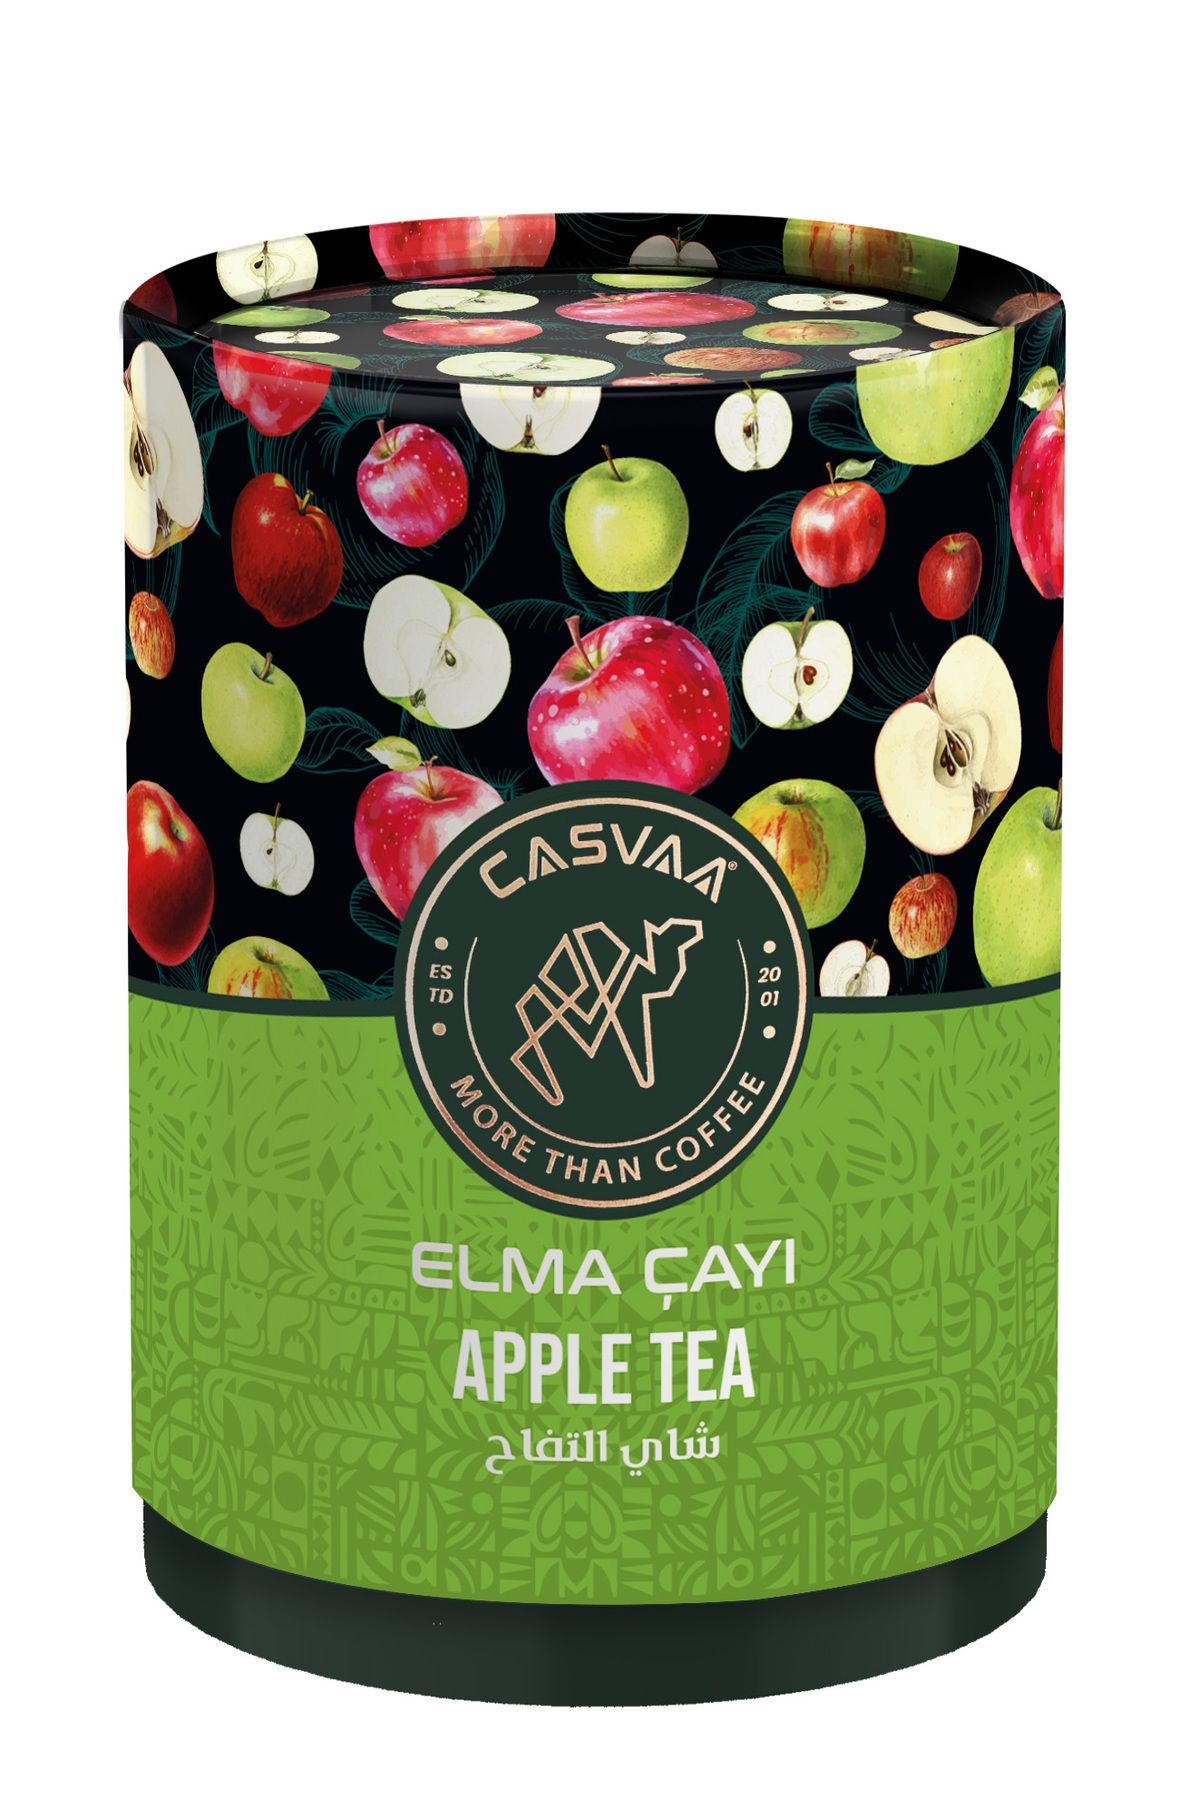 CASVAA COFFE Elma Çayı 200g